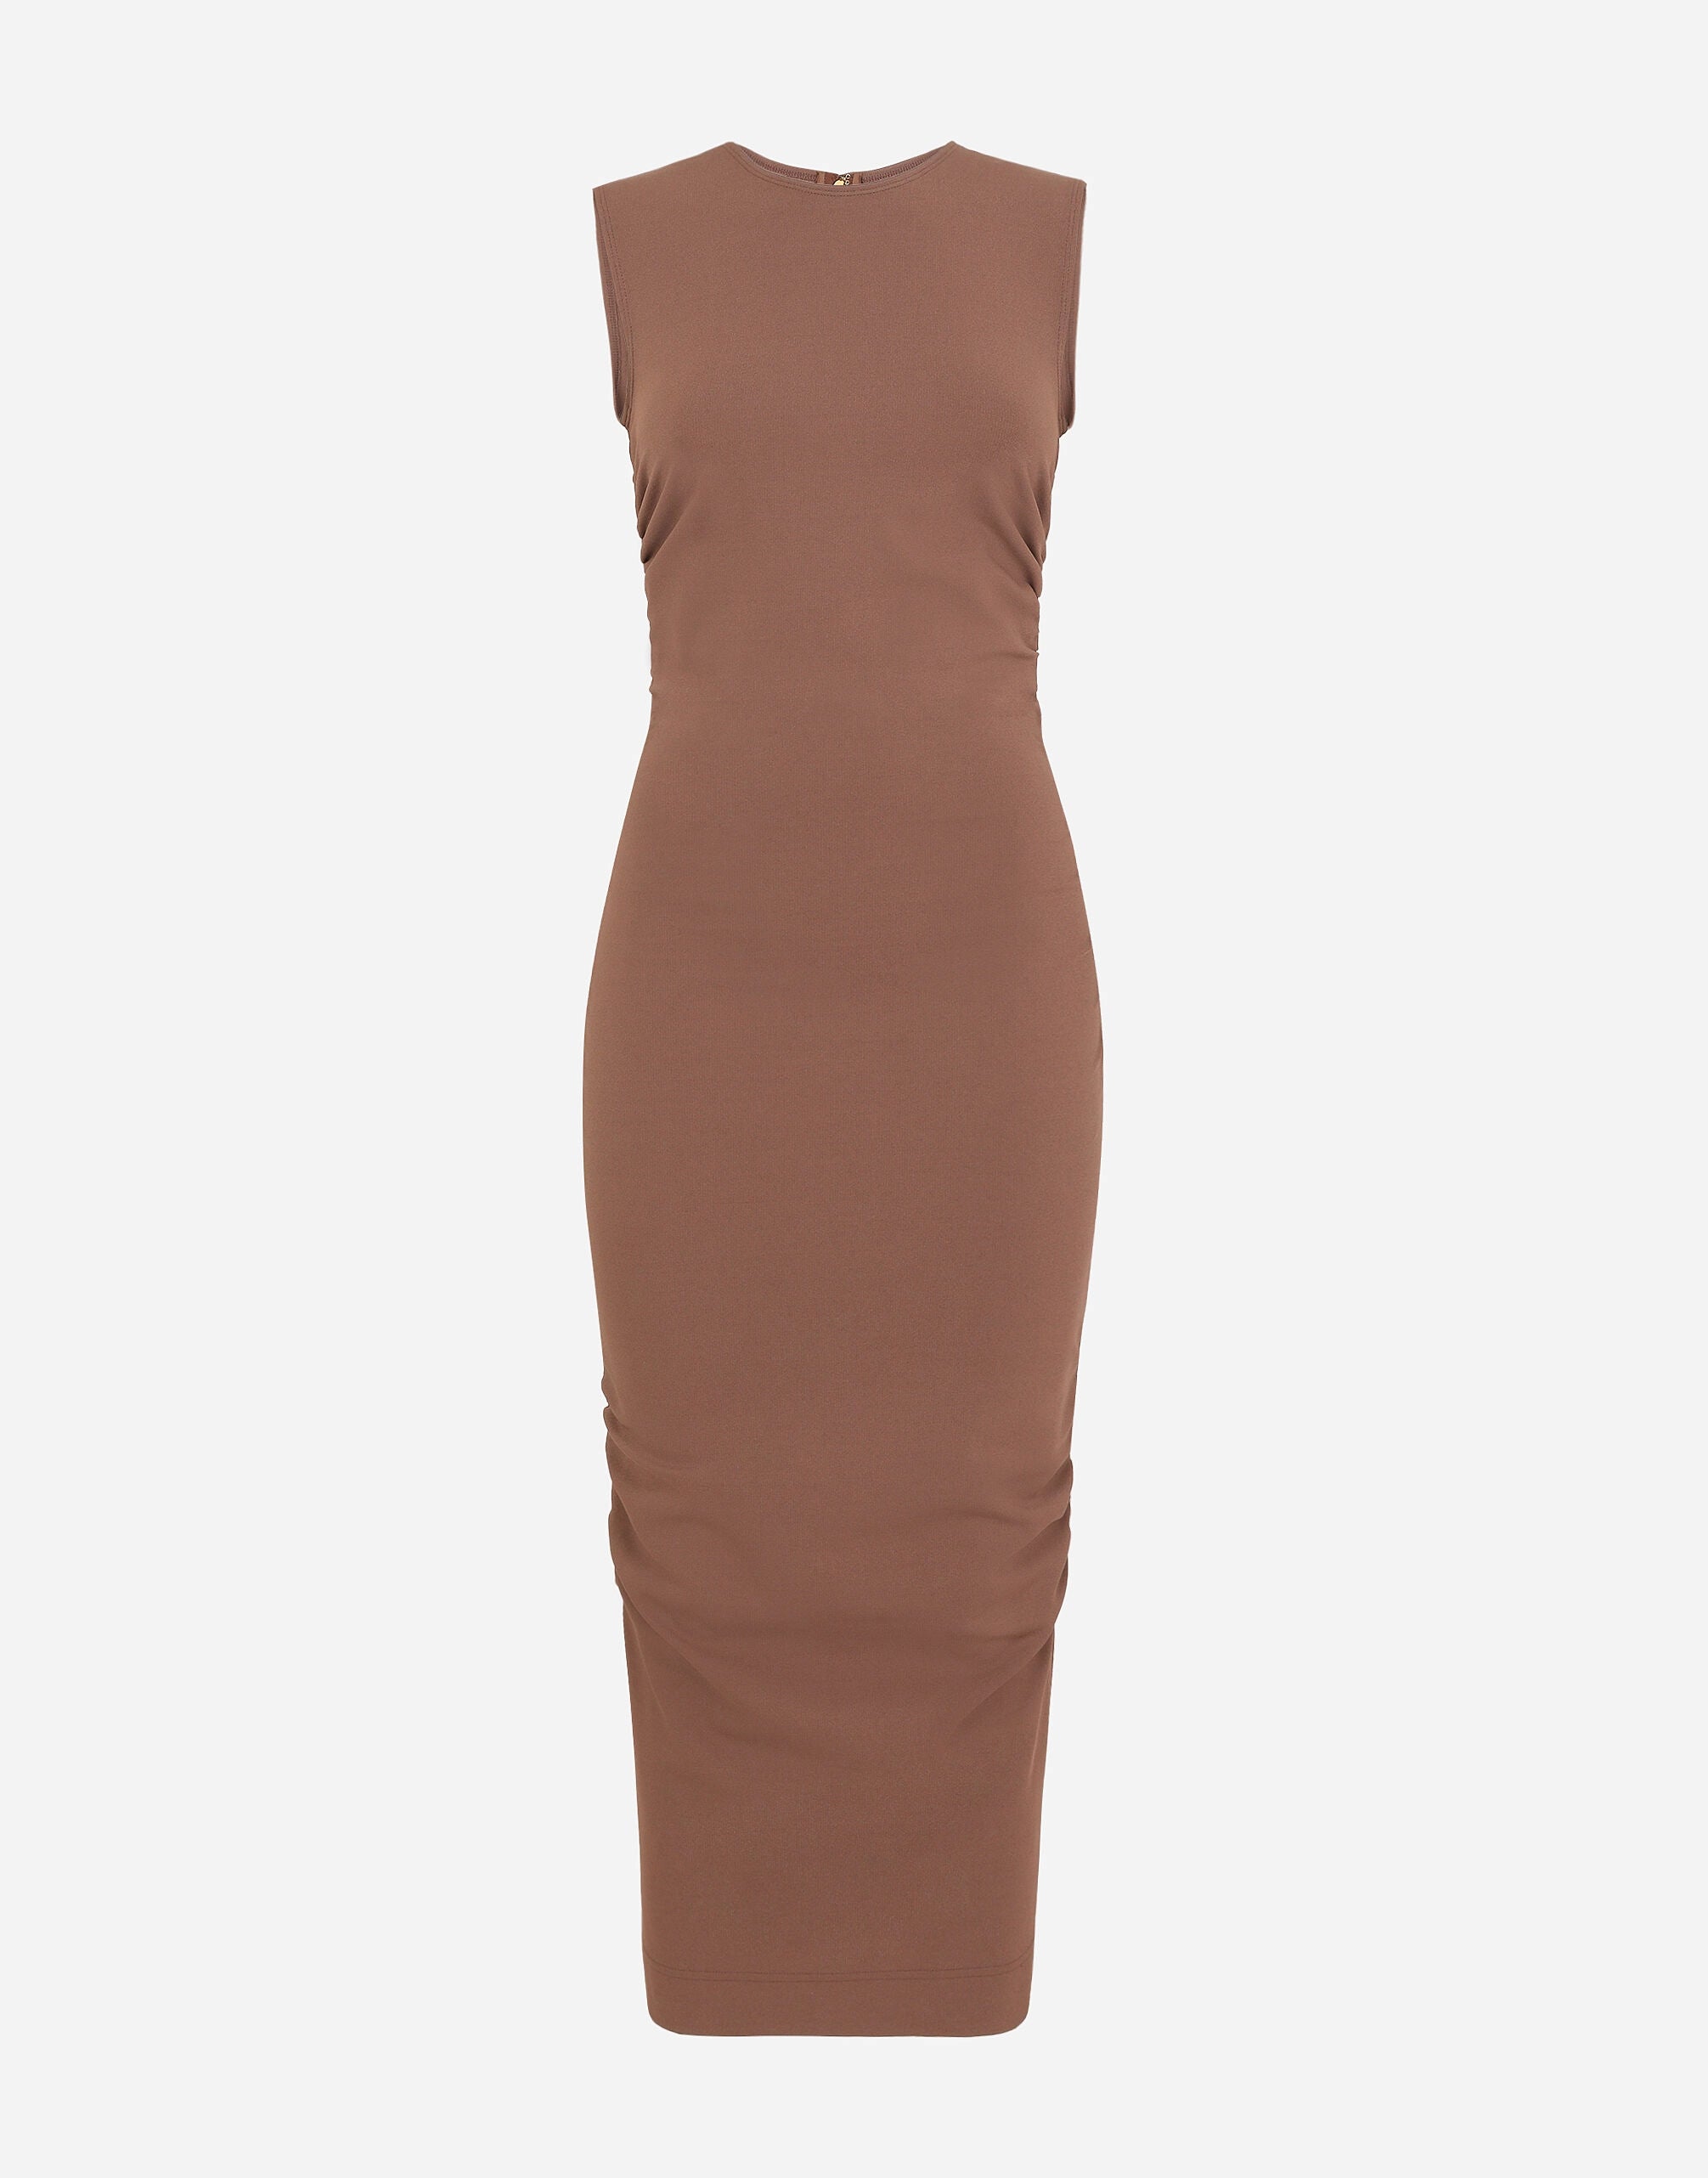 Dolce & Gabbana Sleeveless Calf-Length Jersey Dress